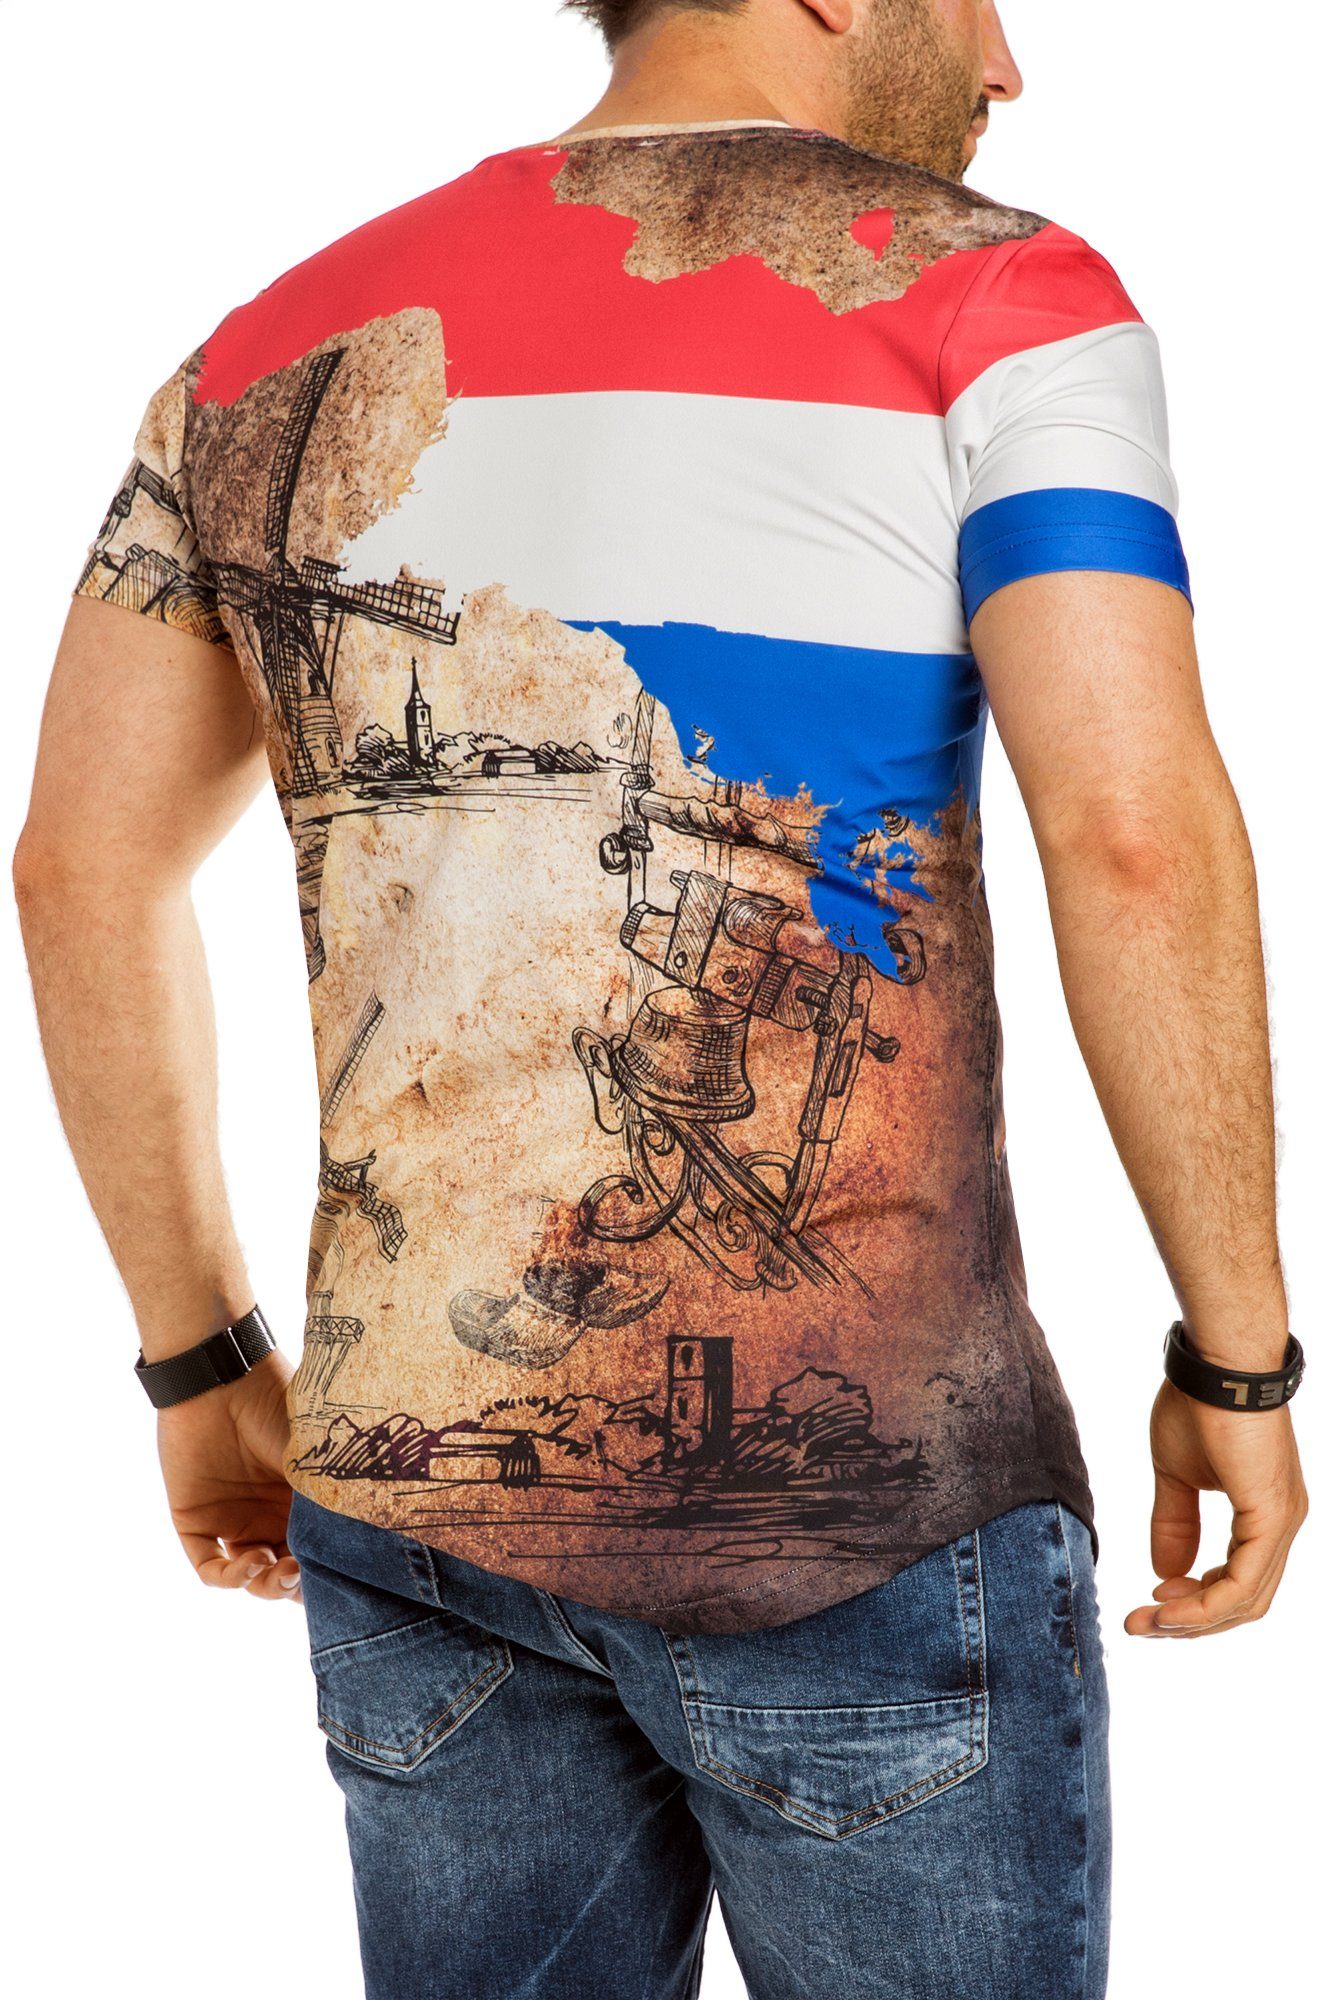 Trikot RMK Rundhals-Ausschnitt Holland Tee Herren EM Shirt Oversize Netherlands T-Shirt T-Shirt Fan WM